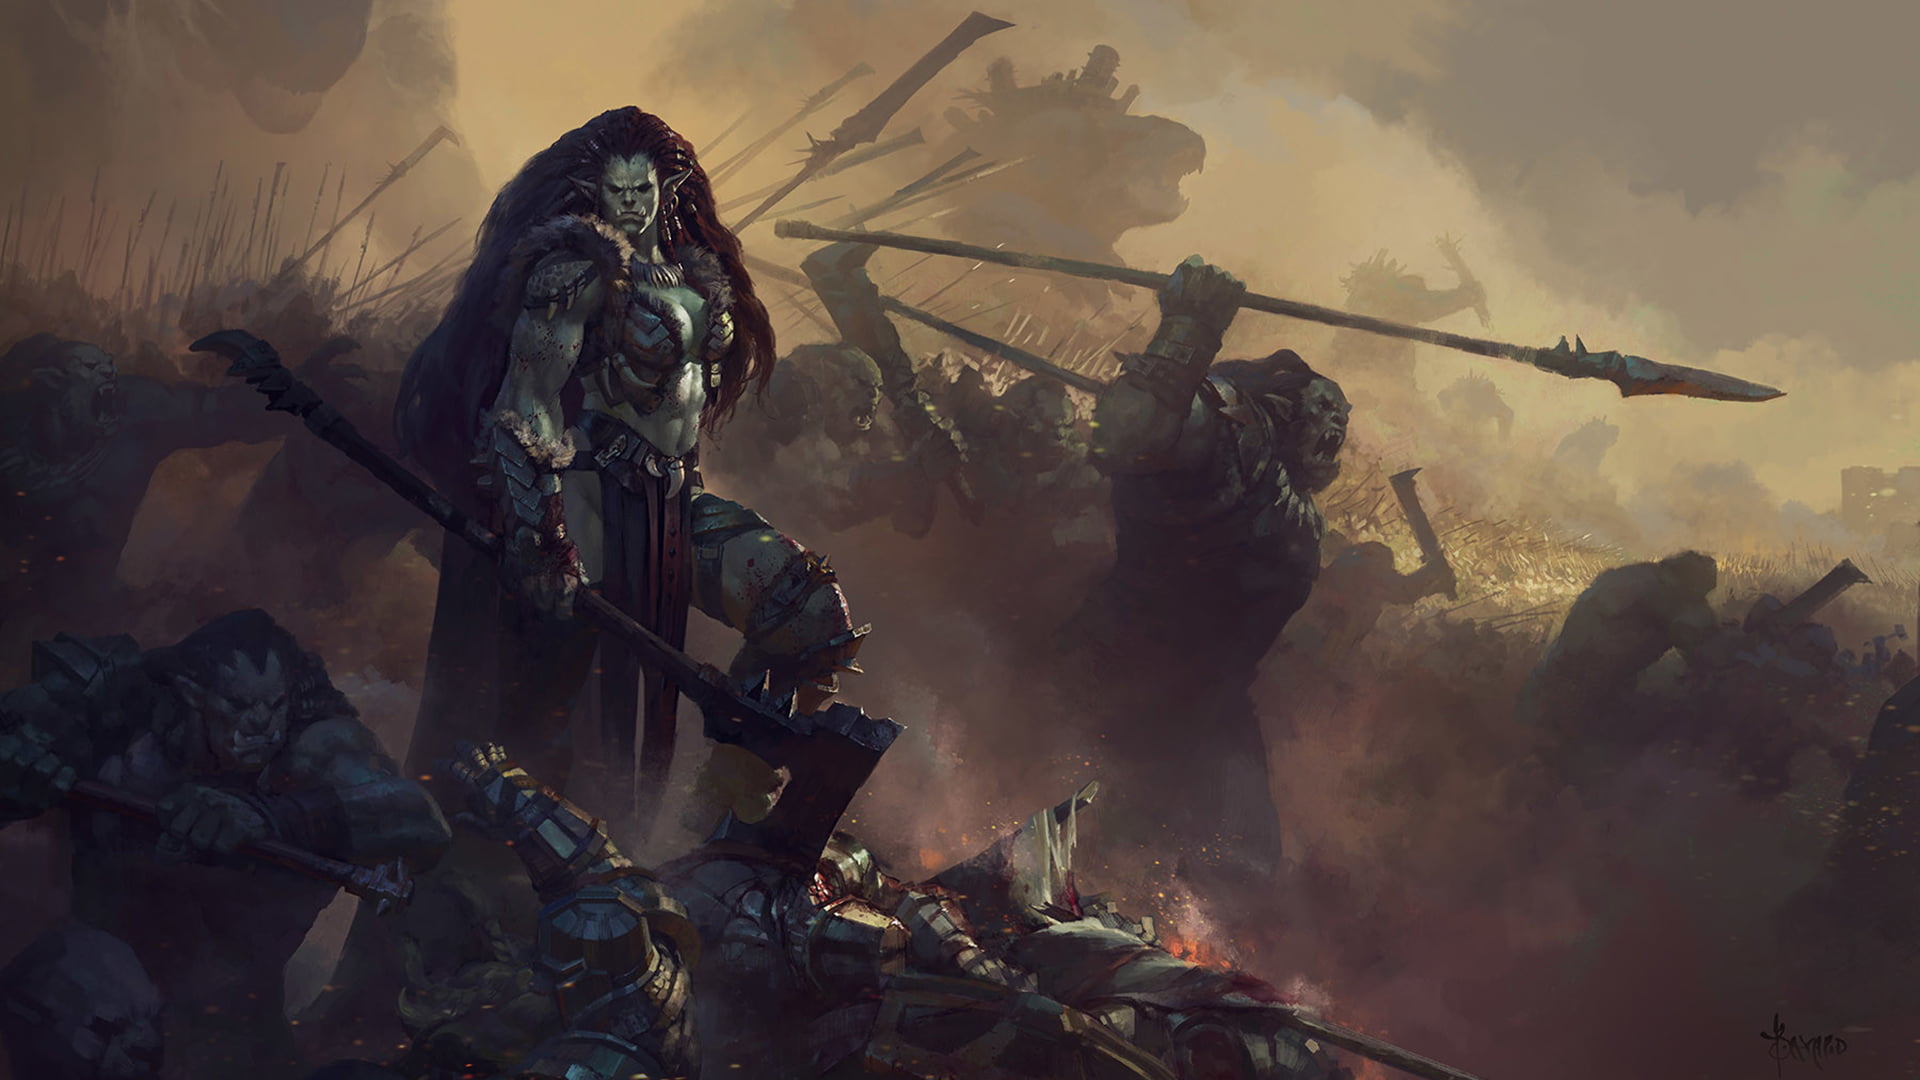 INTRIGUES REPUBLIQUE Digital-art-orcs-war-warrior-wallpaper